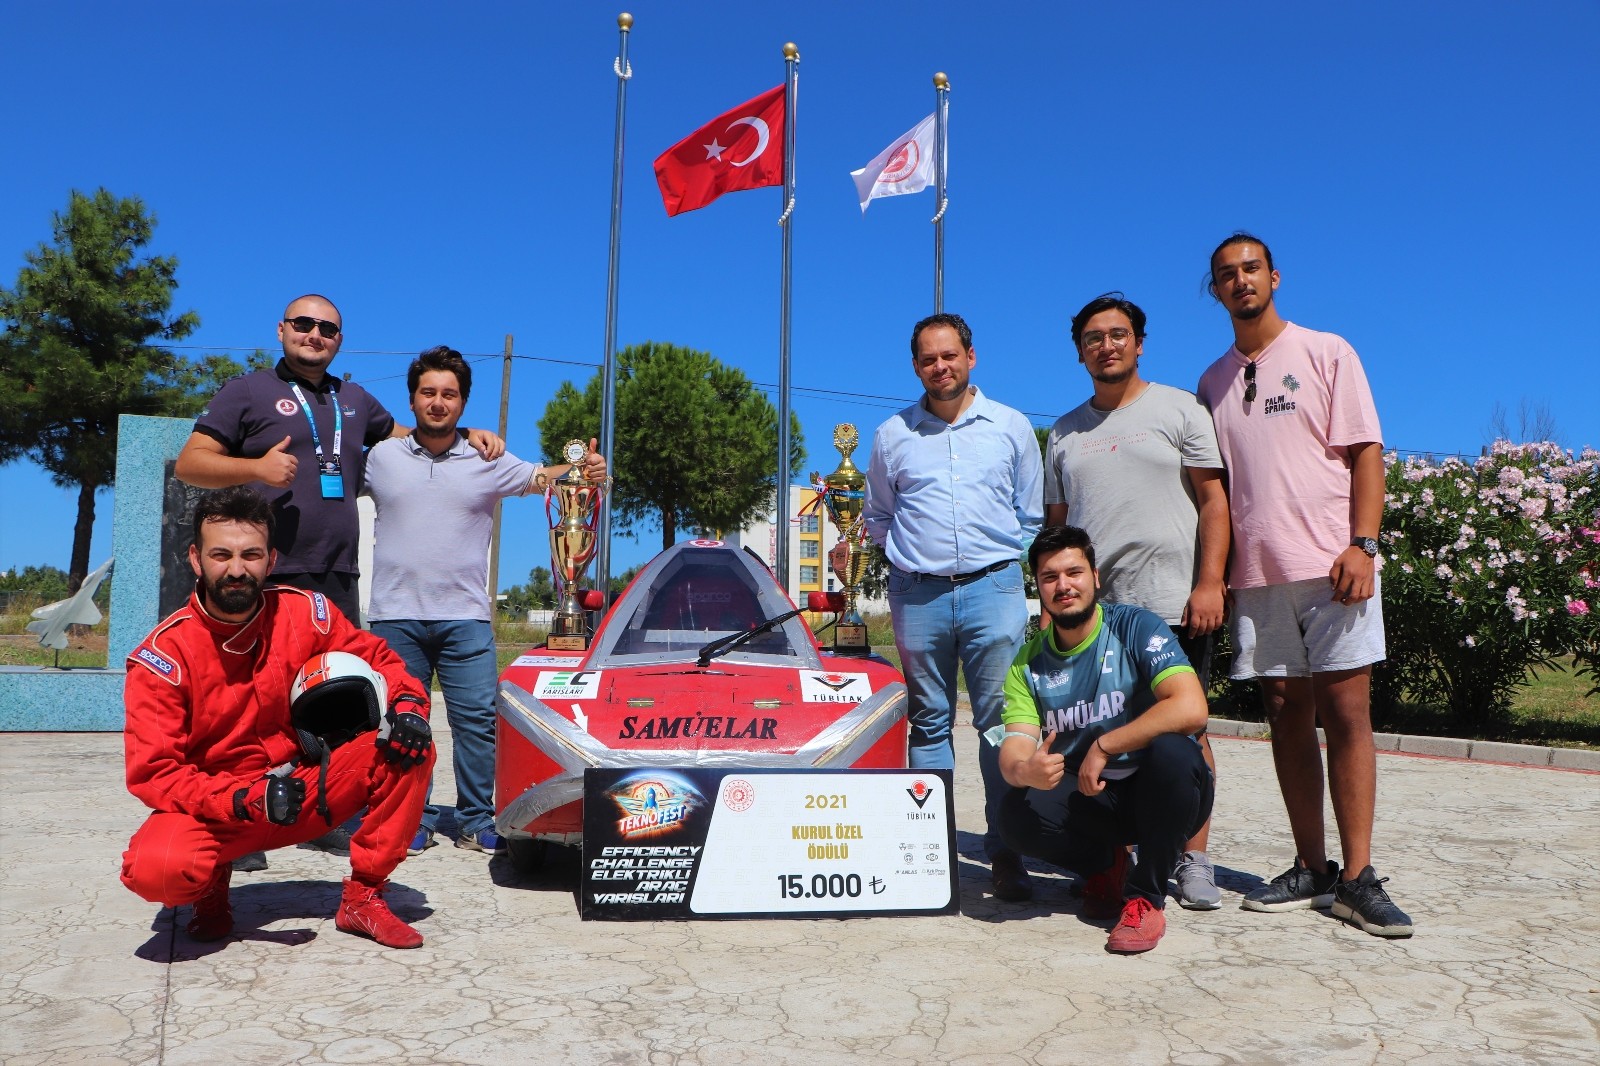 1 TL ile 250 kilometre giden elektrikli araç yaptılar,  TEKNOFEST’te 2 ödül birden aldılar